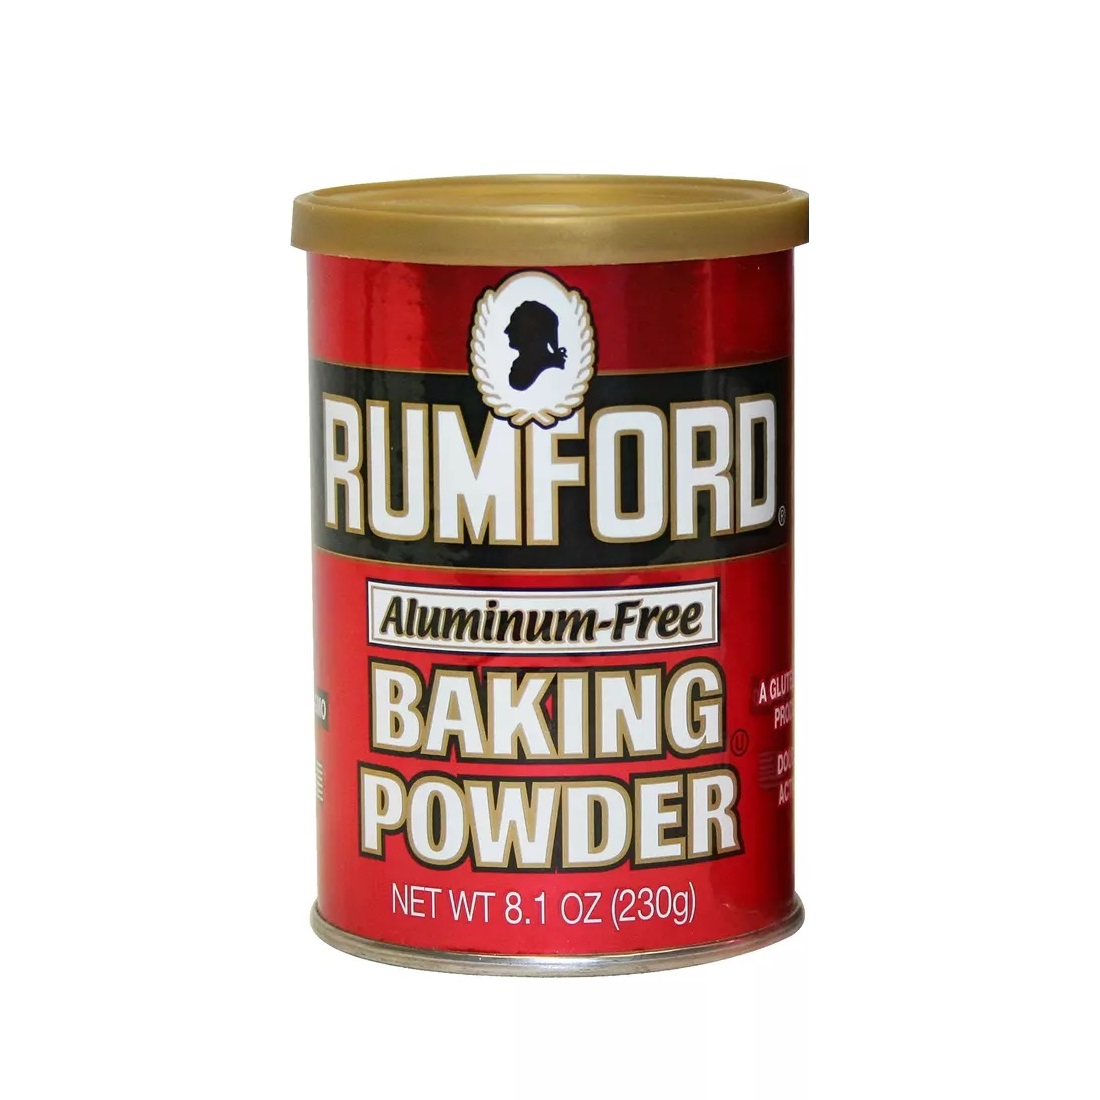 Rumford Premium Aluminum-Free Baking Powder, 8.1 oz - image 1 of 5